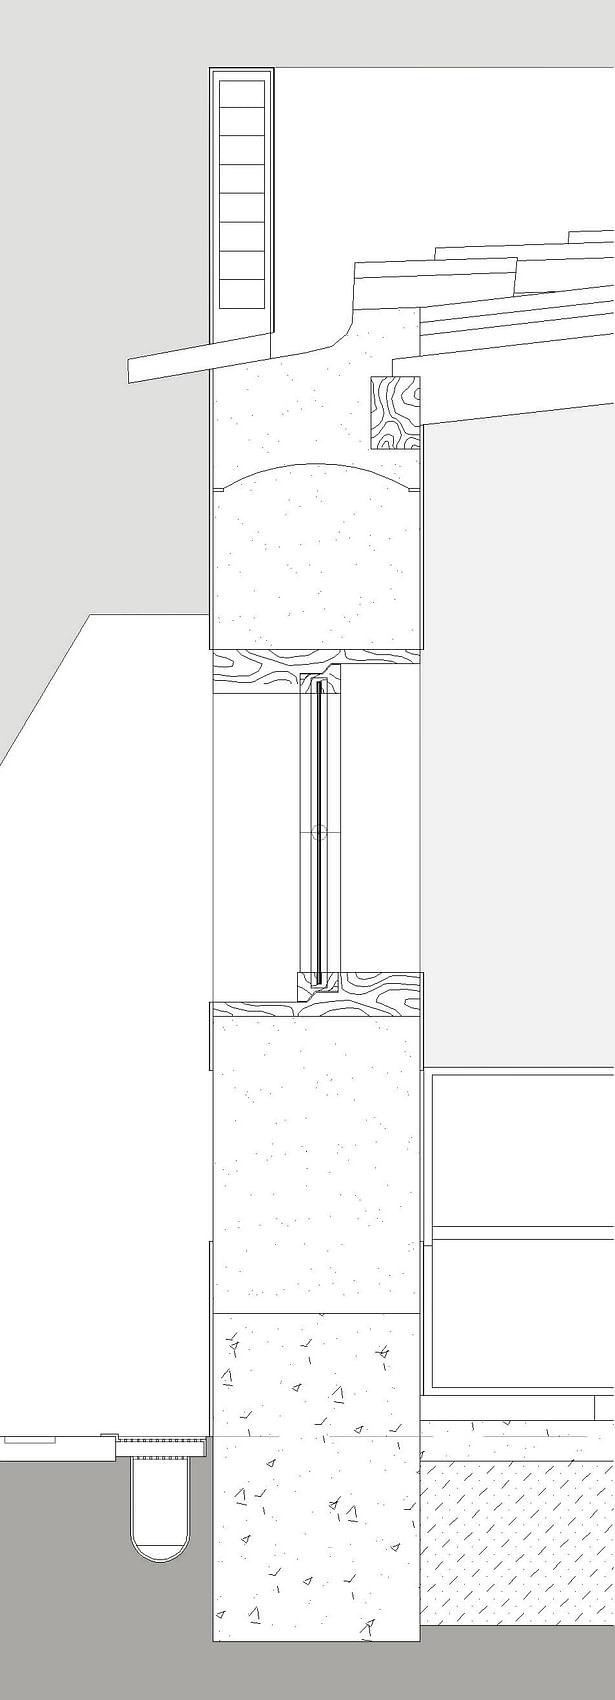 pormenor construtivo de uma parede de taipa